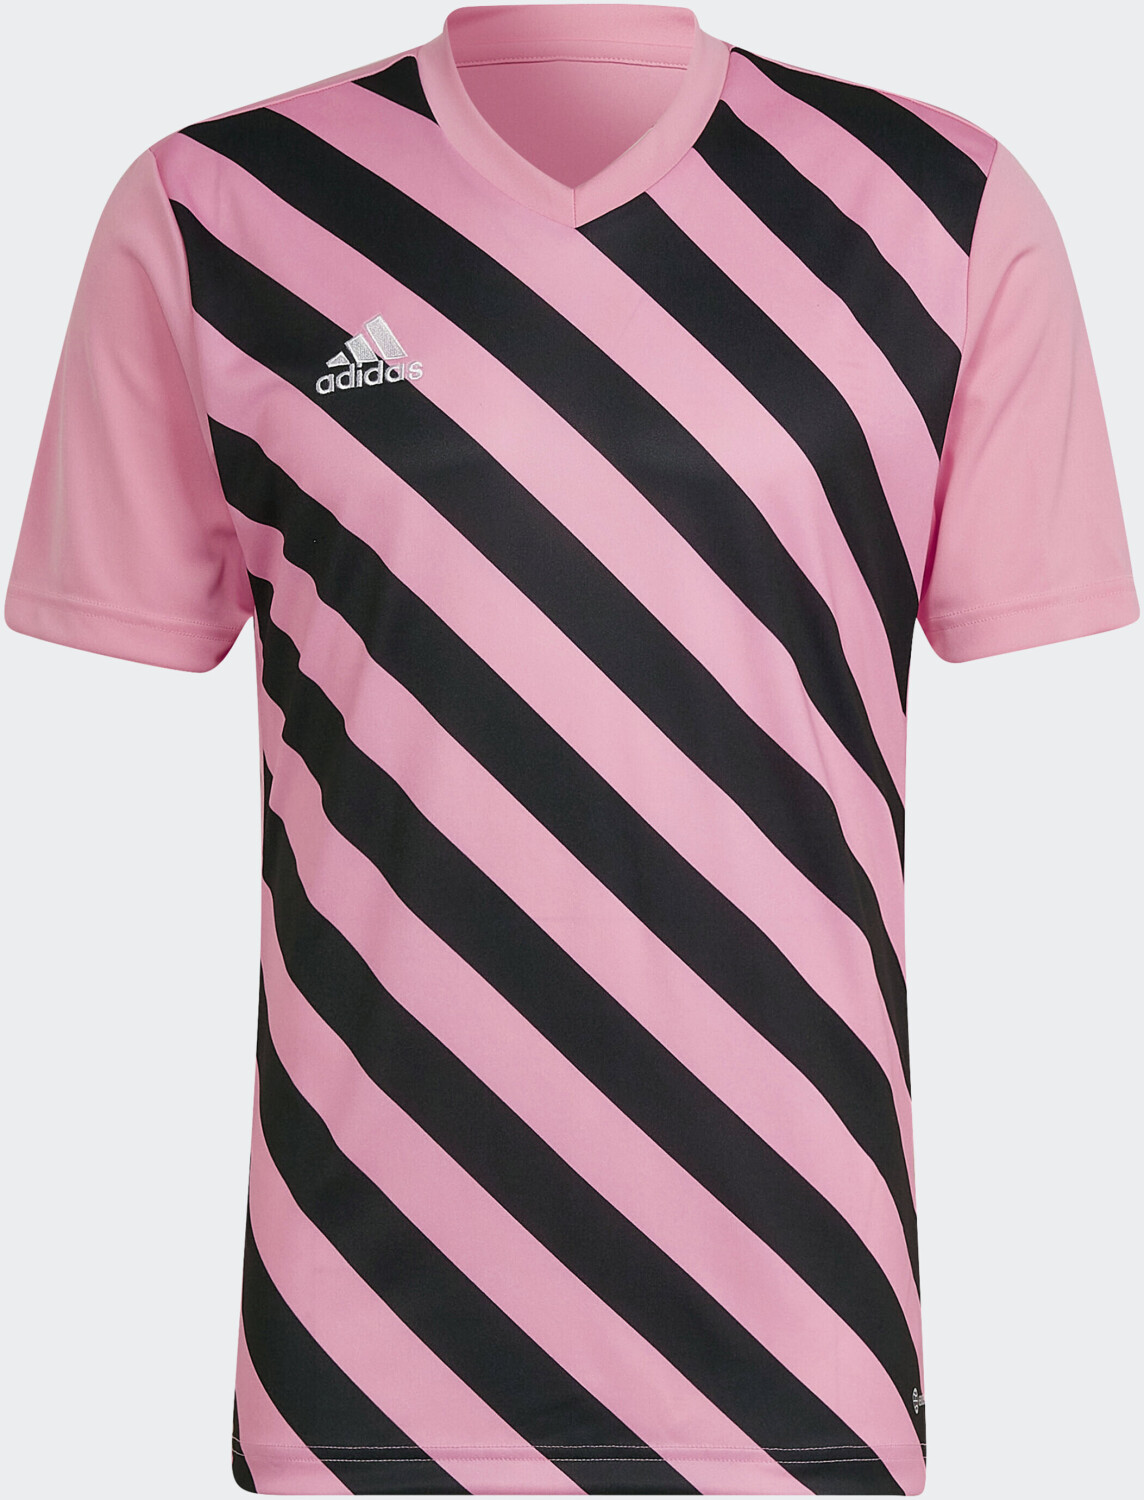 Adidas Entrada | glow/black 13,12 pink semi ab € Trikot Preisvergleich 22 bei Graphic